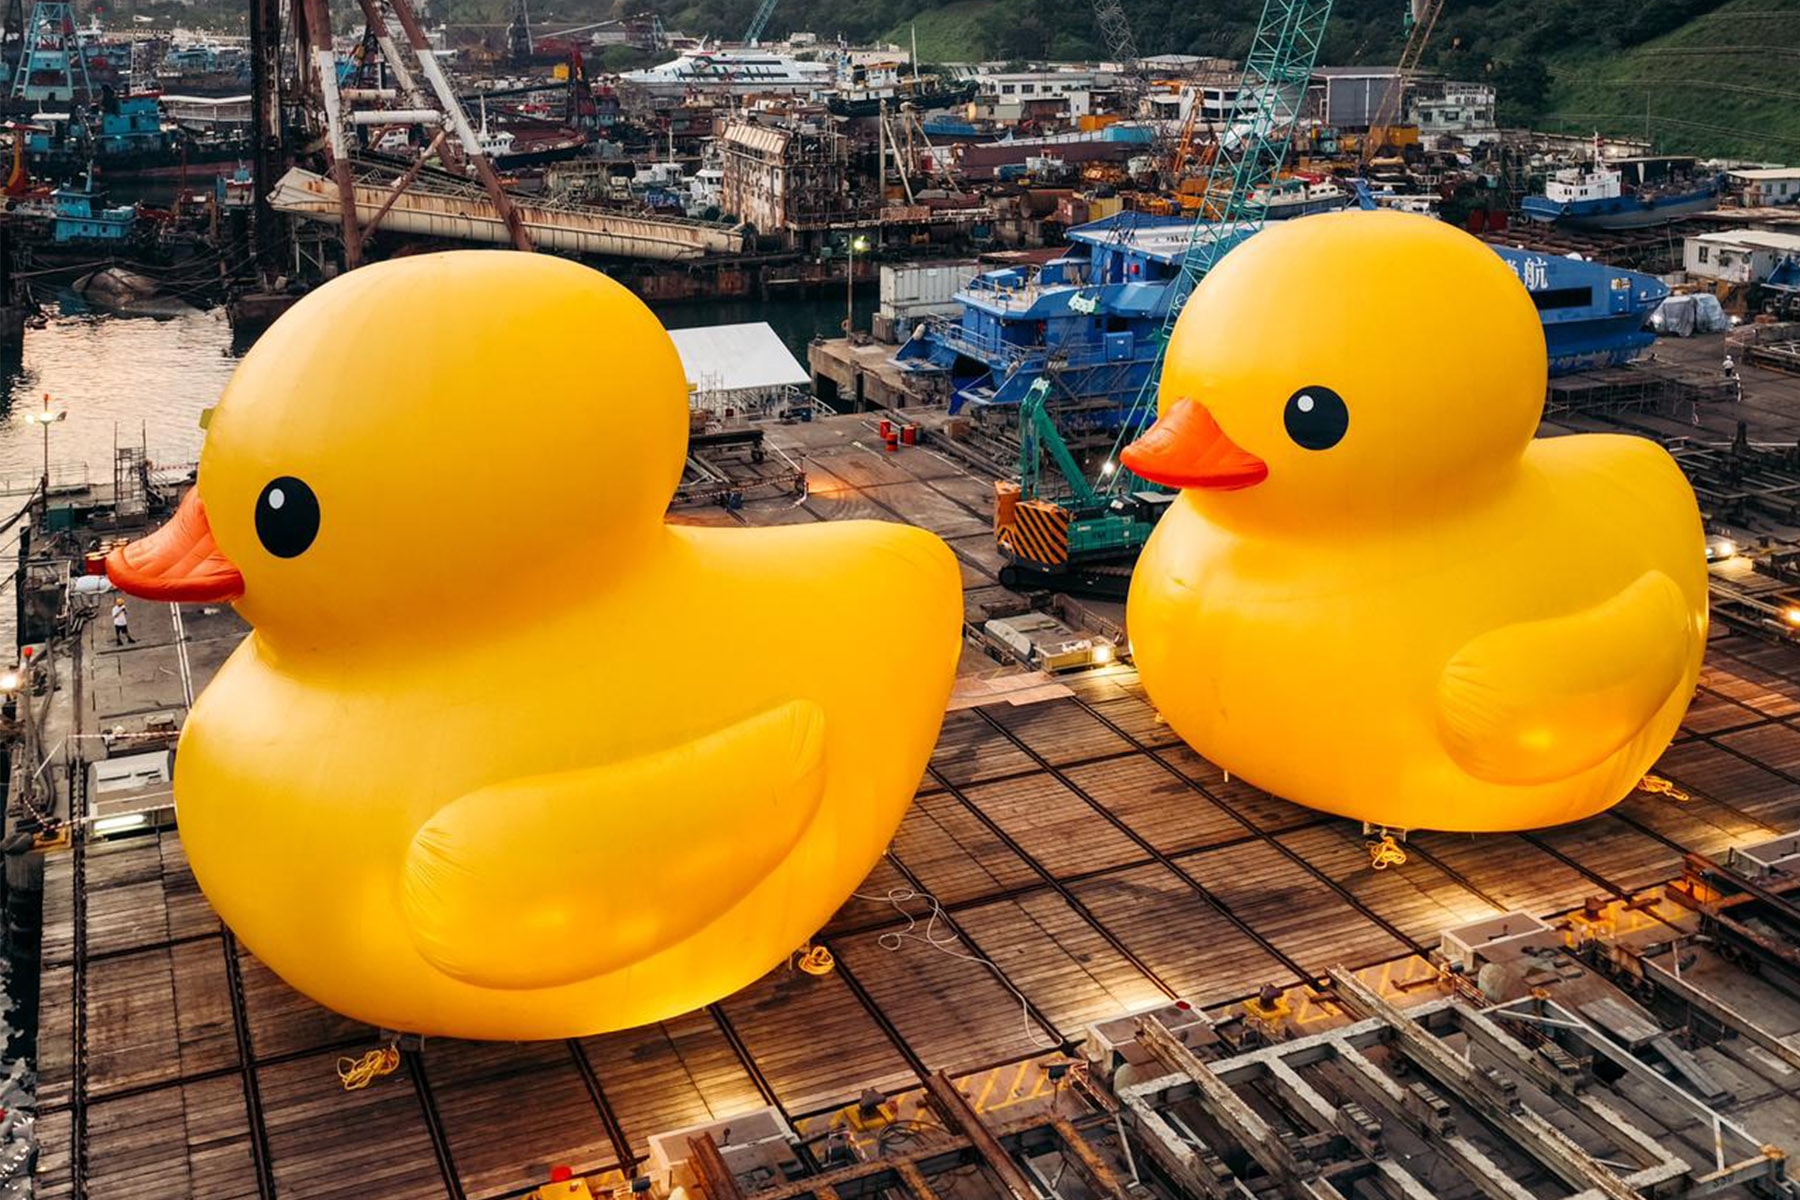 荷蘭藝術家 Florentijn Hofman 創作「巨型黃色小鴨」現身香港青衣海域